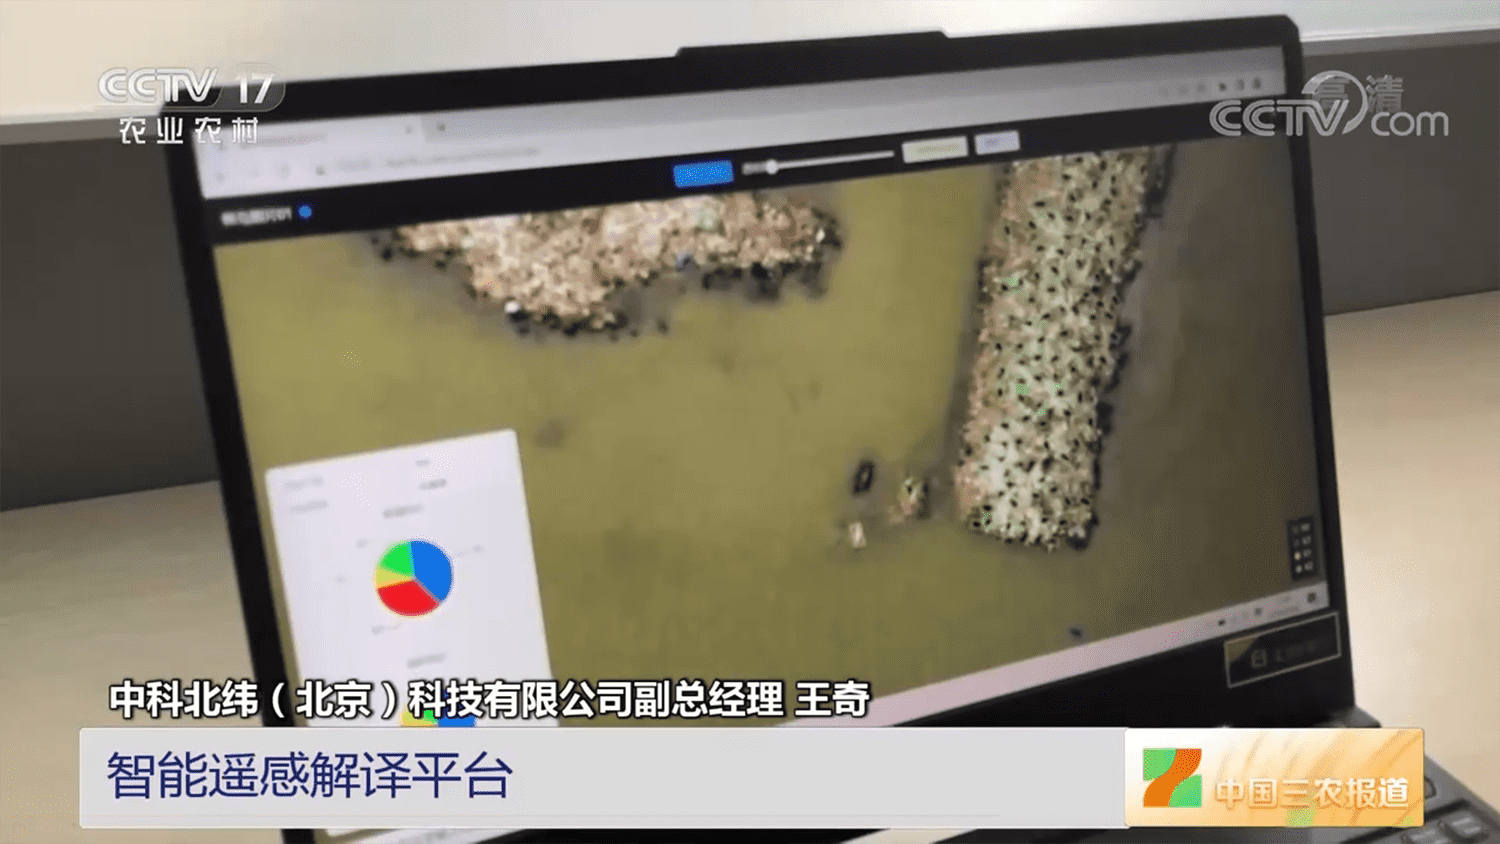 CCTV-17農業農村 |  [中國三農報道]中國科學院植被病蟲害遙感監測與預測系統升級版發布